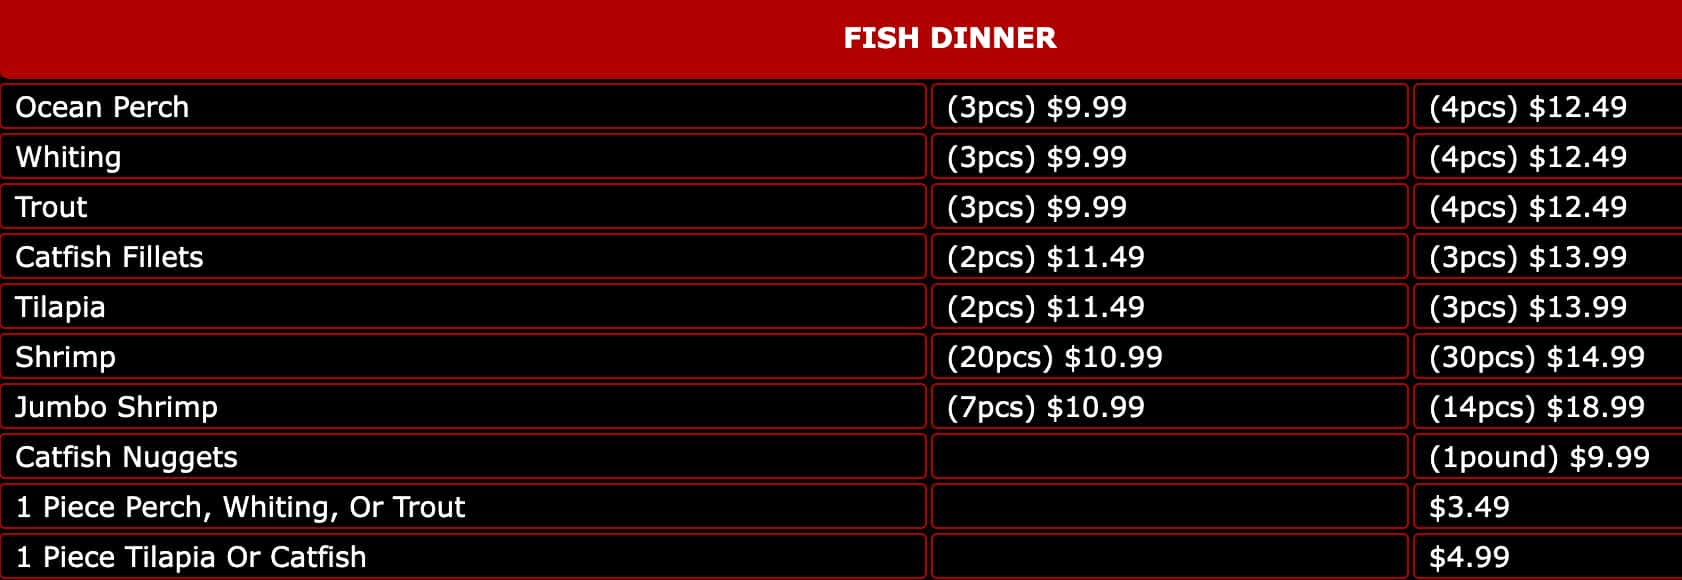 Hip Hop Fish & Chicken Fish Dinner Menu